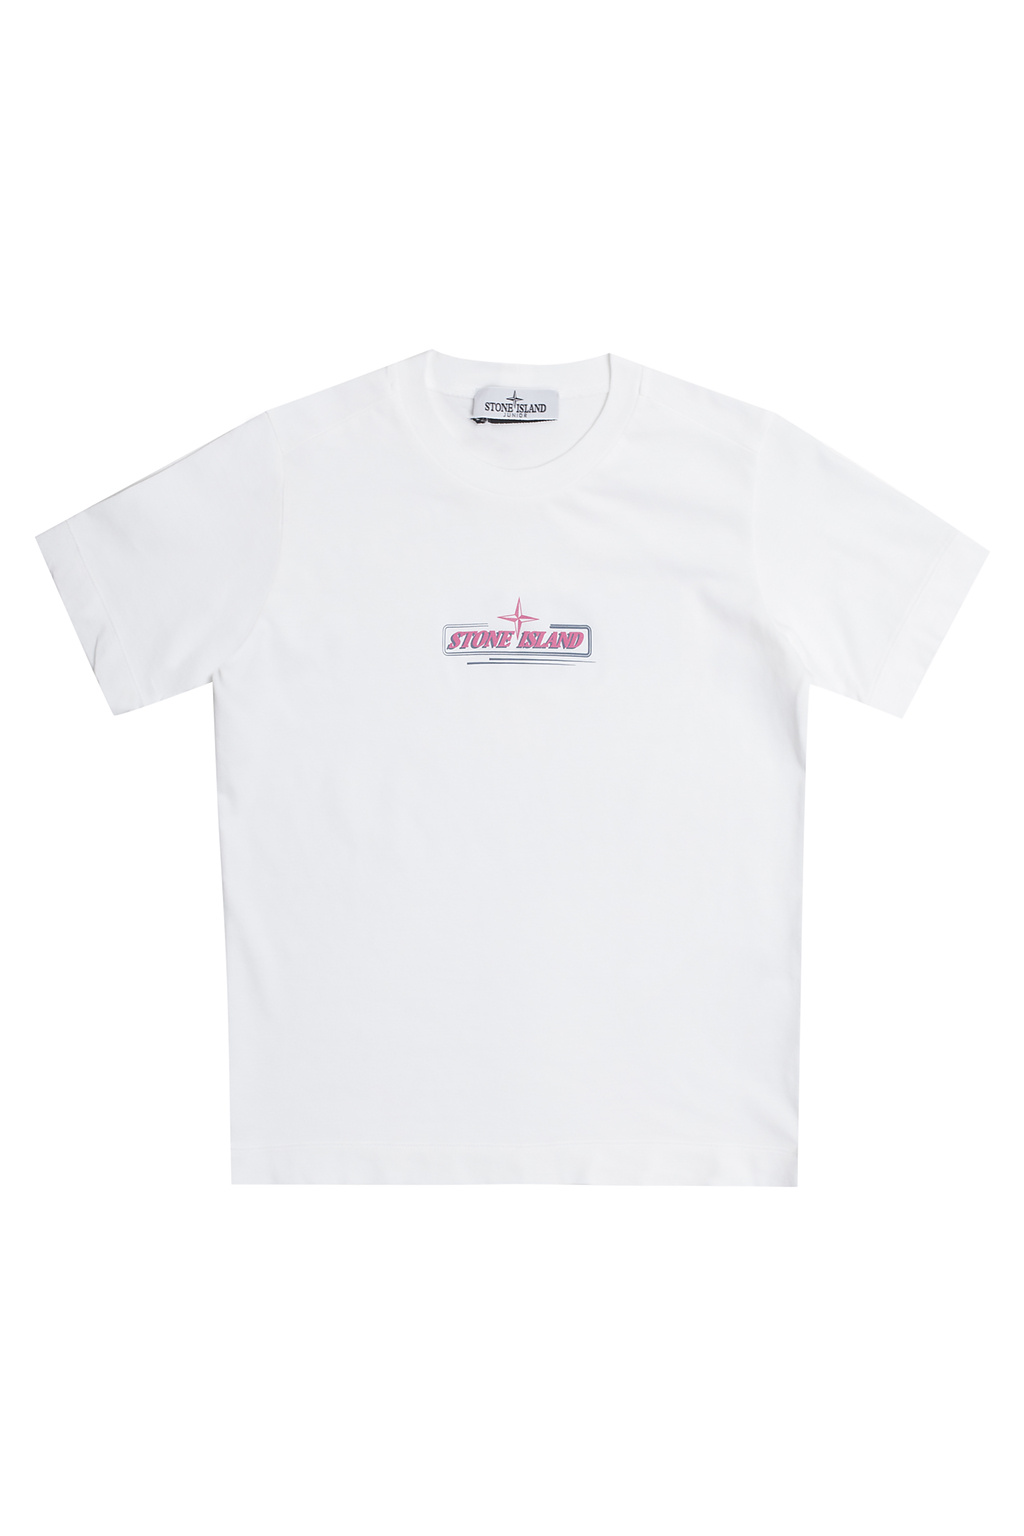 wallets women clothing Shirts Logo T-shirt